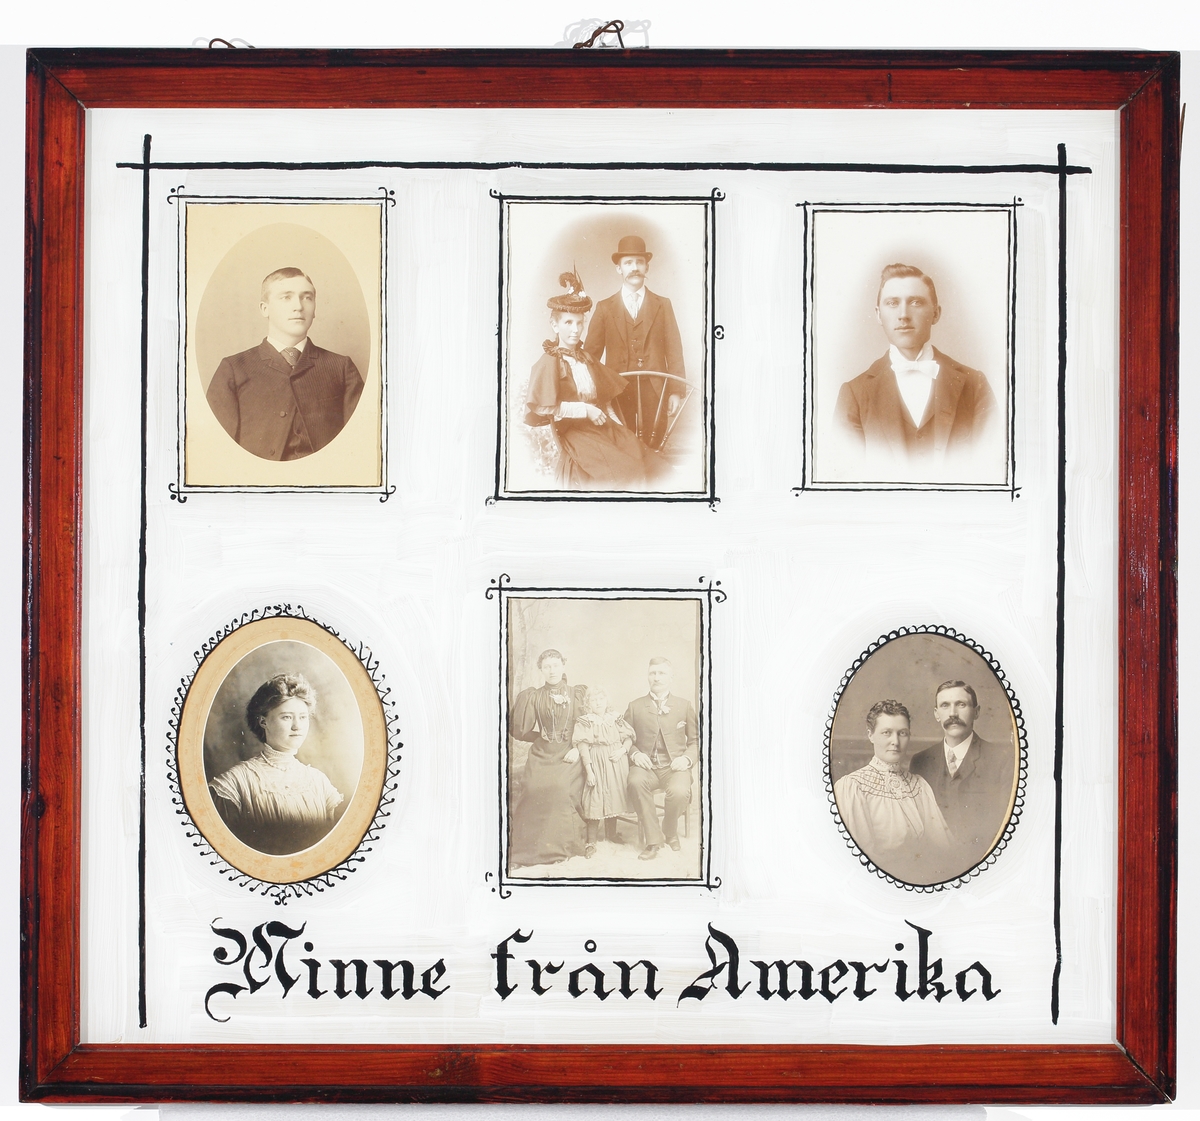 Sex inramade foton av svenska USA-emigranter (släktingar?), från tiden ca 1890-1915. Inglasad tavla med mörkbrun ram.